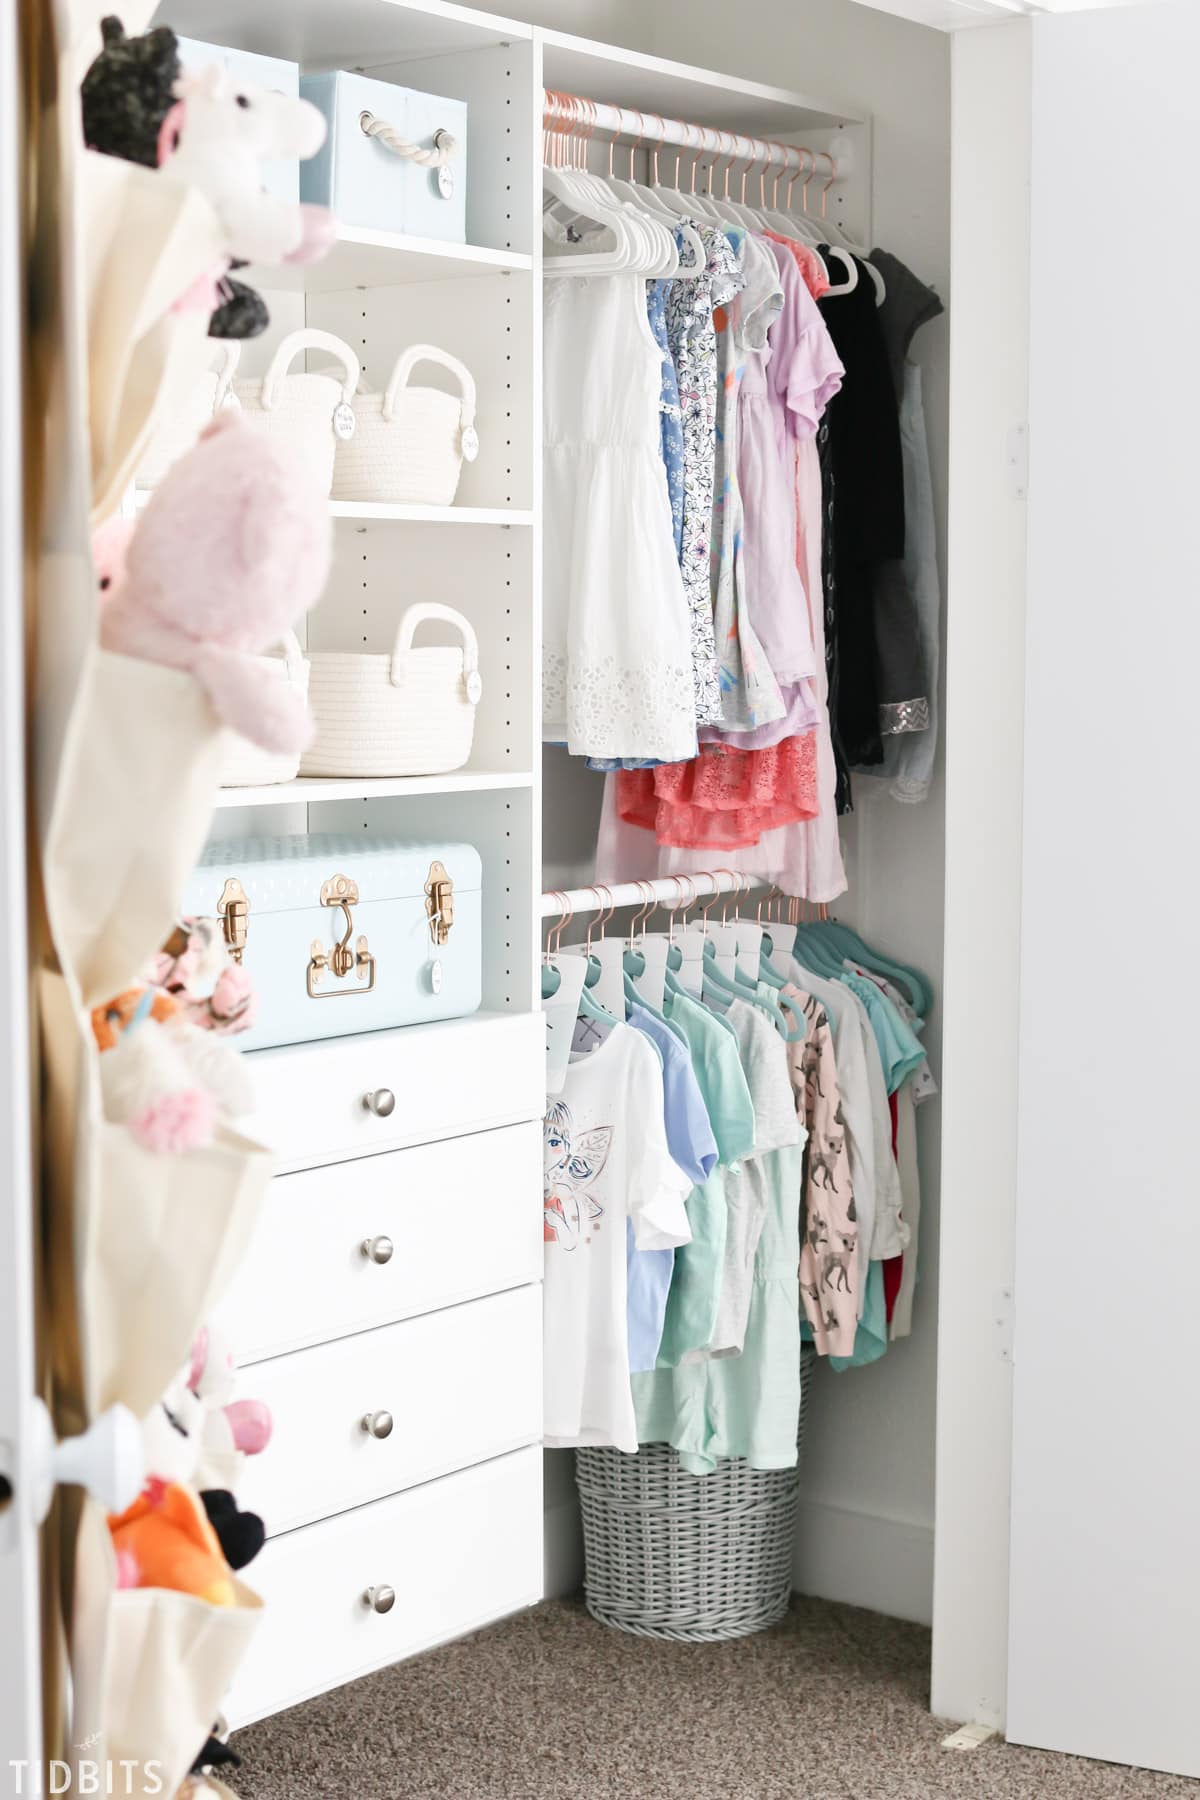 8 tips for better kids closet organization